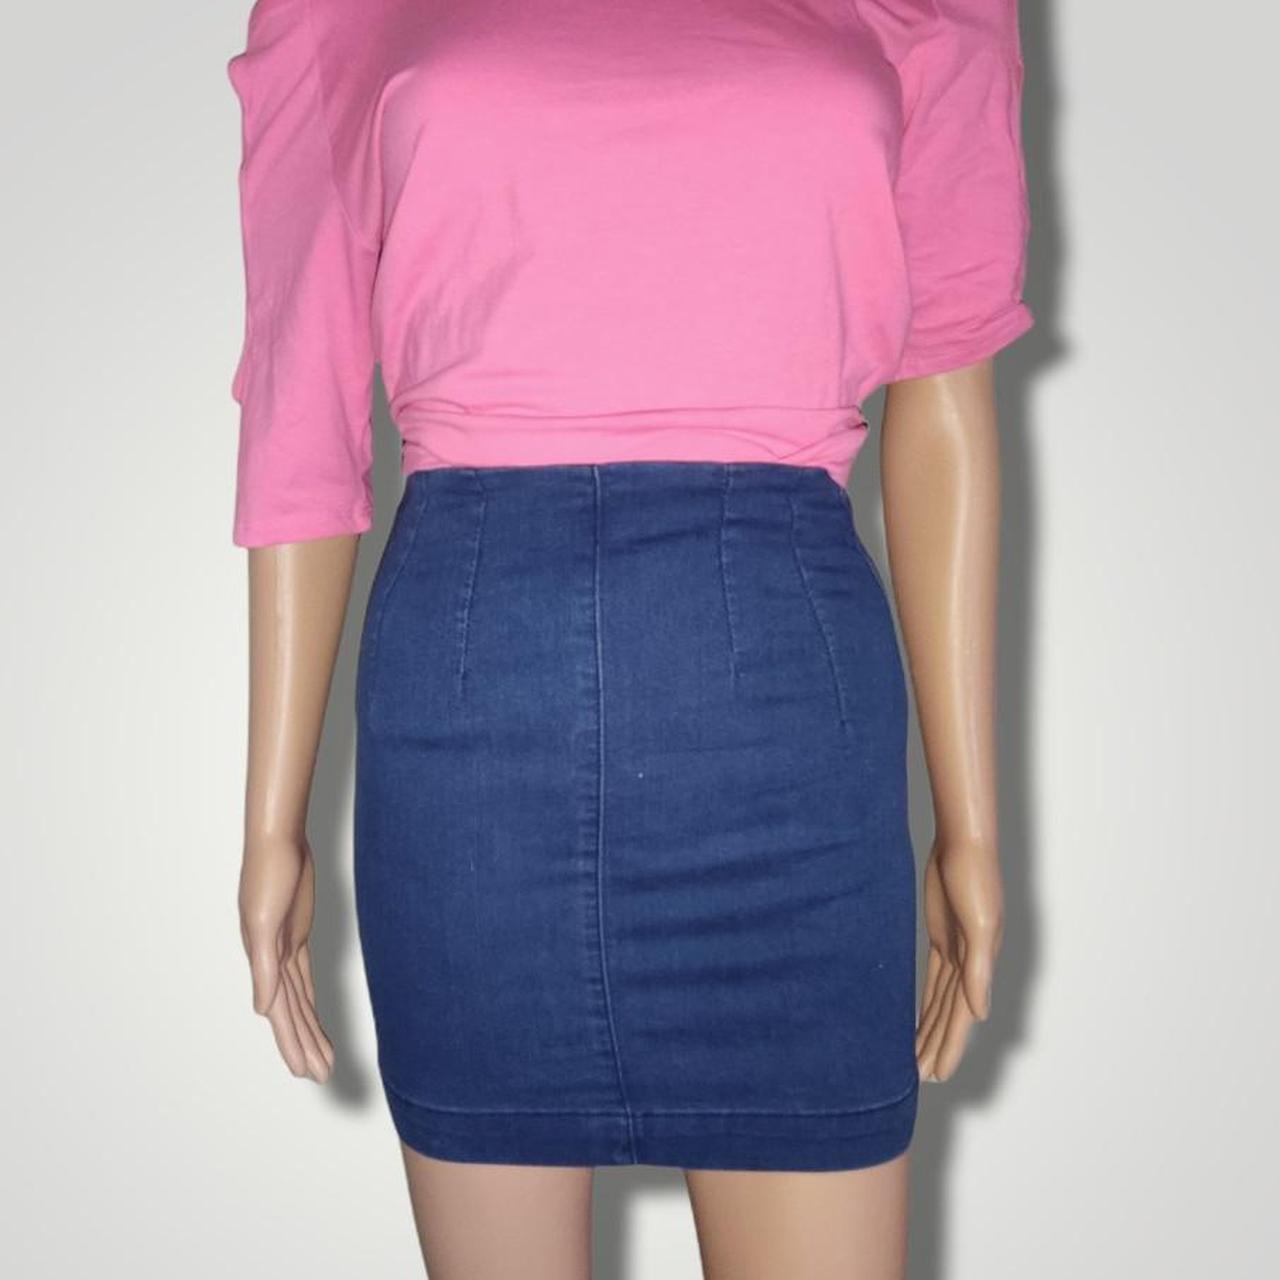 blue denim highwaist pencil skirt Size UK irl 6 ,... - Depop